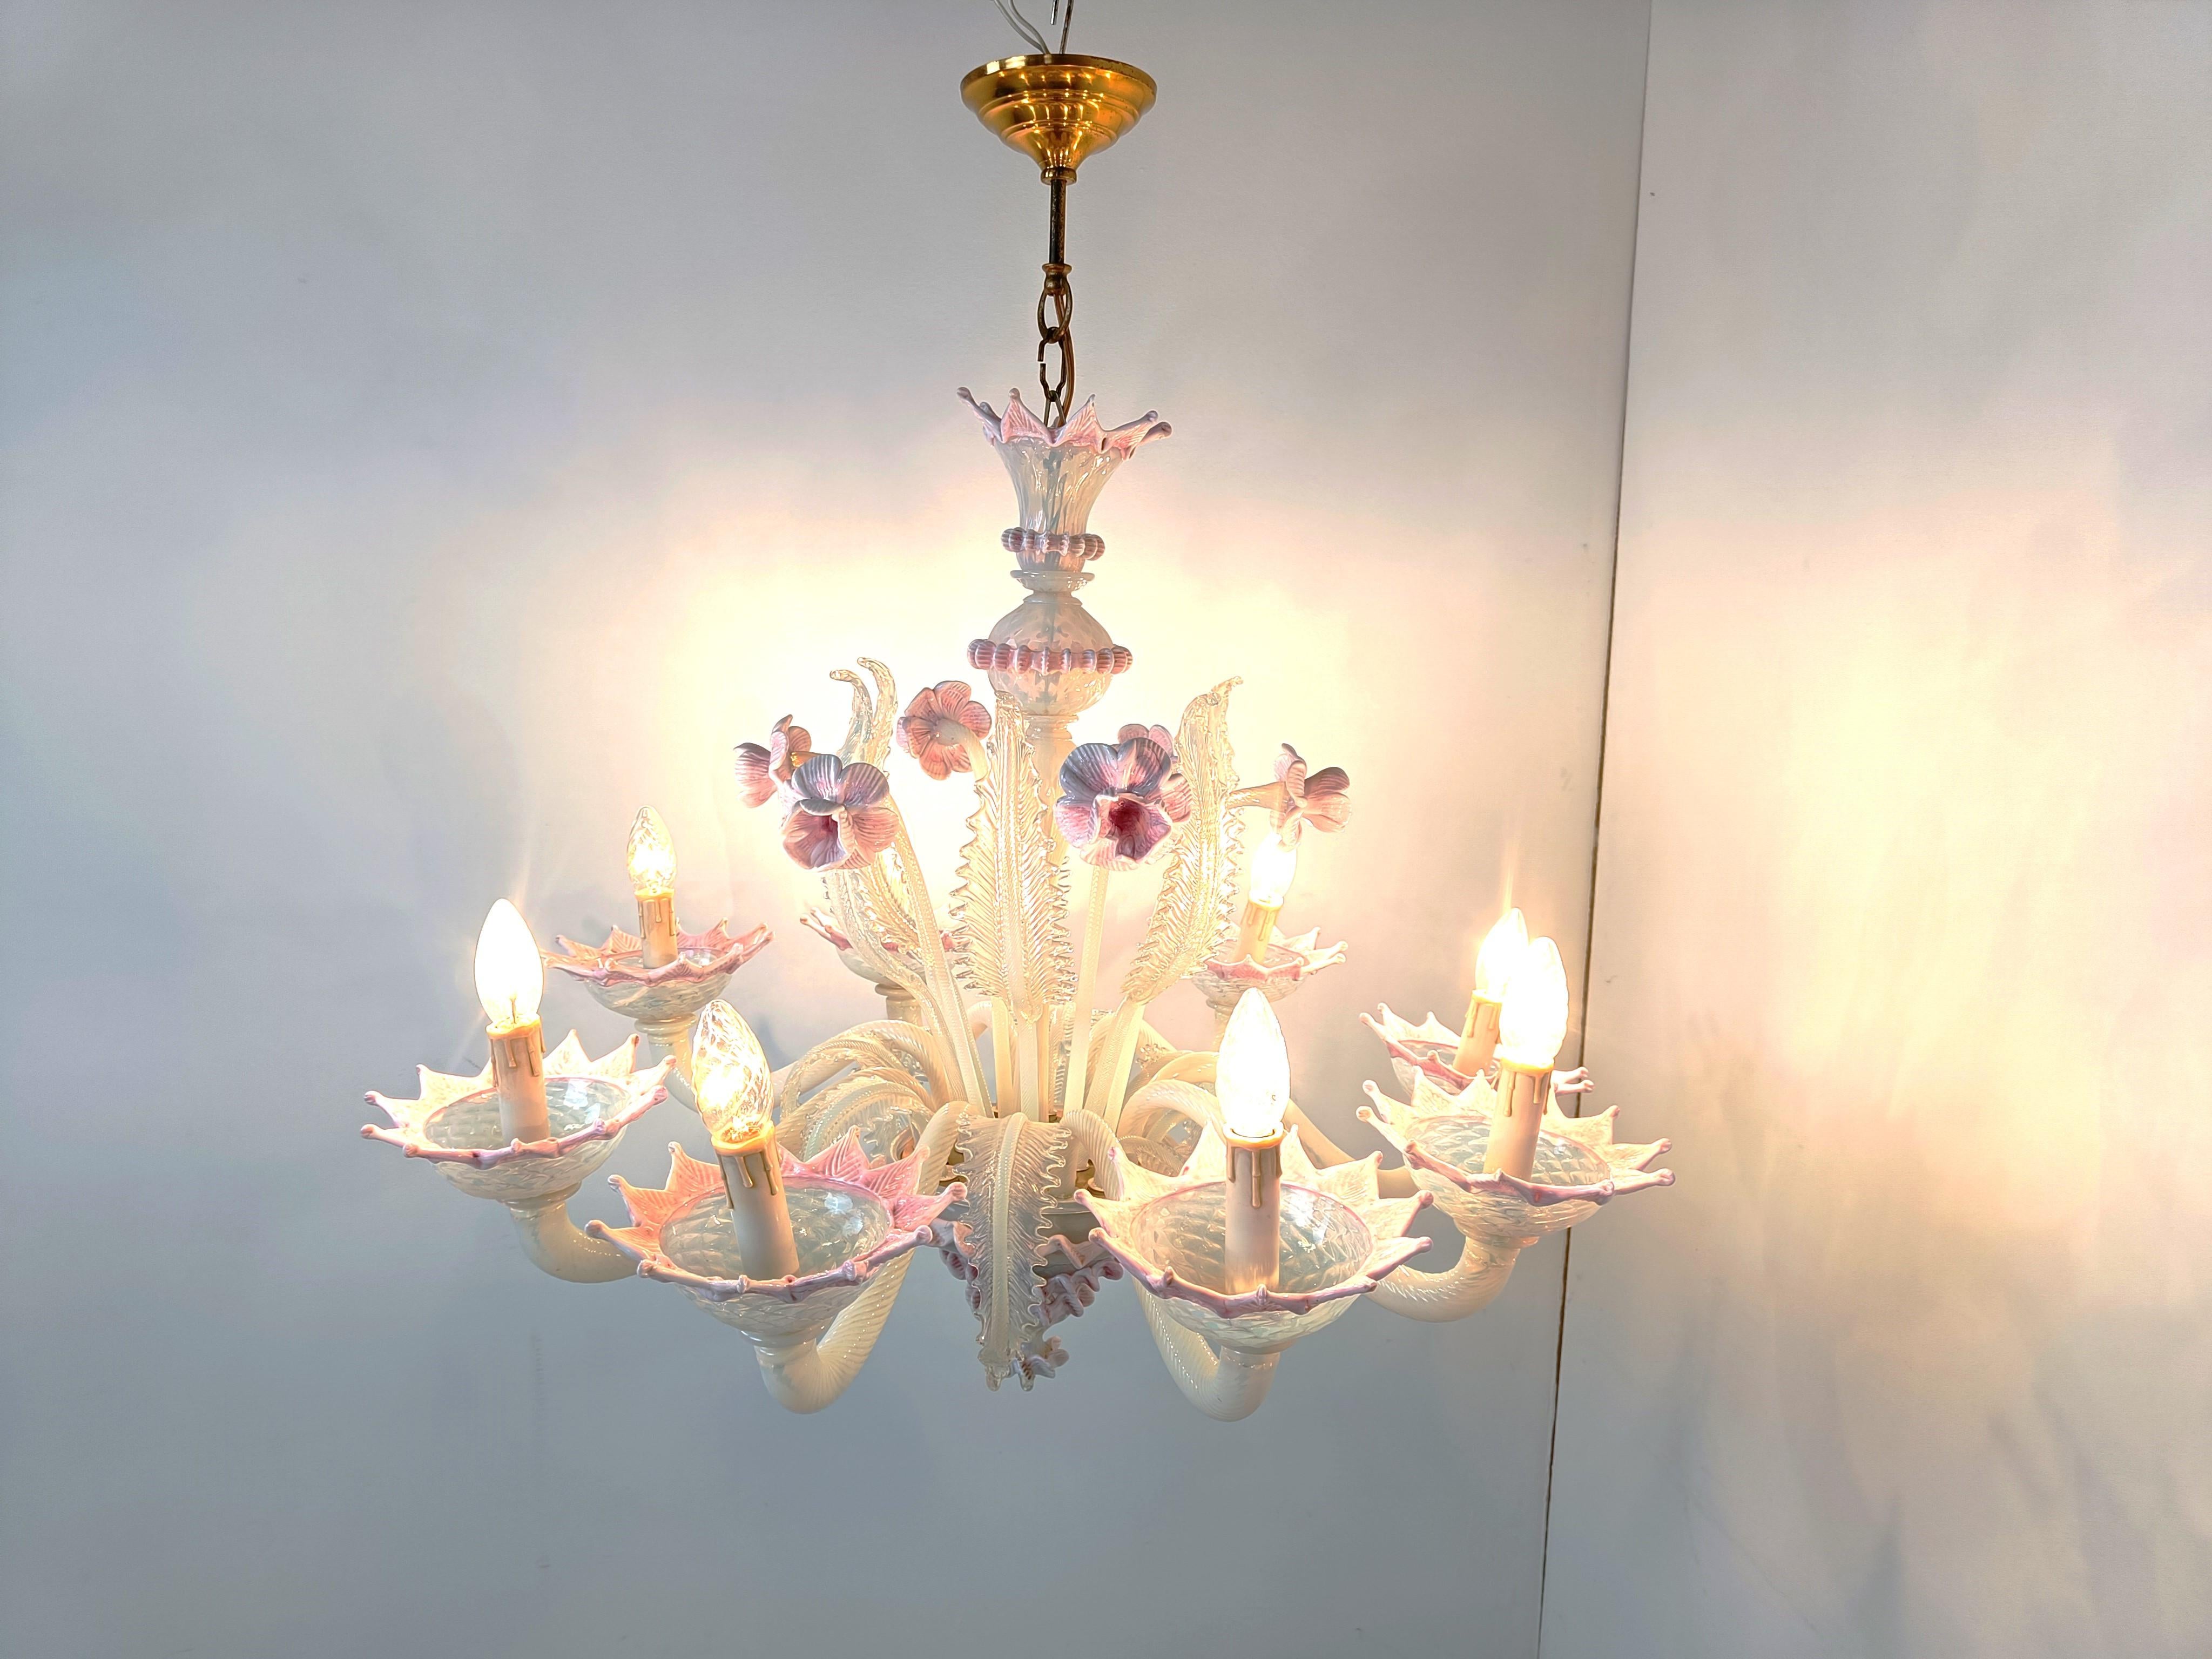 Superbe lustre en verre de Murano datant du milieu du siècle dernier.

Il se compose de 8 bras avec des lampes candélabres.

Le lustre est très élégant et comporte de magnifiques fleurs et feuilles faites à la main.

Complet et en bon état, testé et